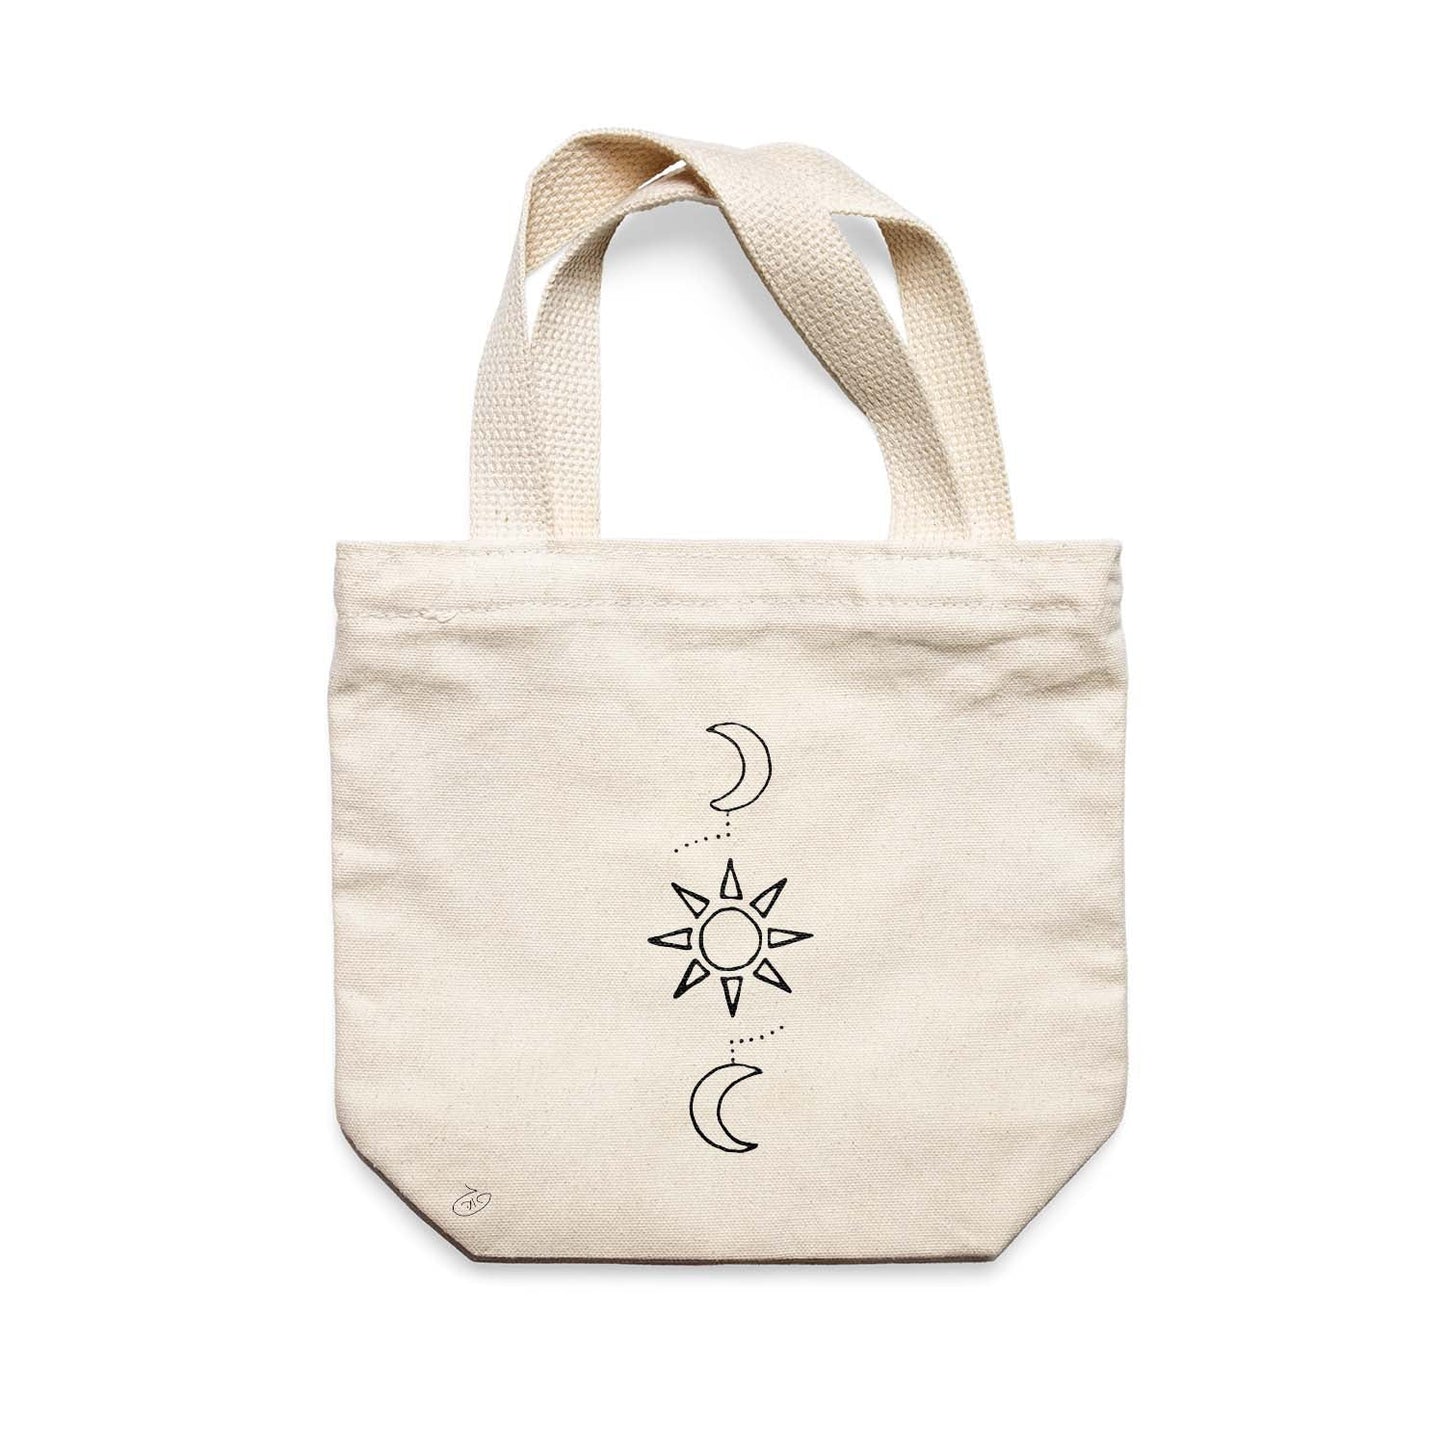 תיק צד לנשים וגברים מבד 100% כותנה טבעית בעיצוב Sun&Moons Tote Bag מציור מקורי של גאיה